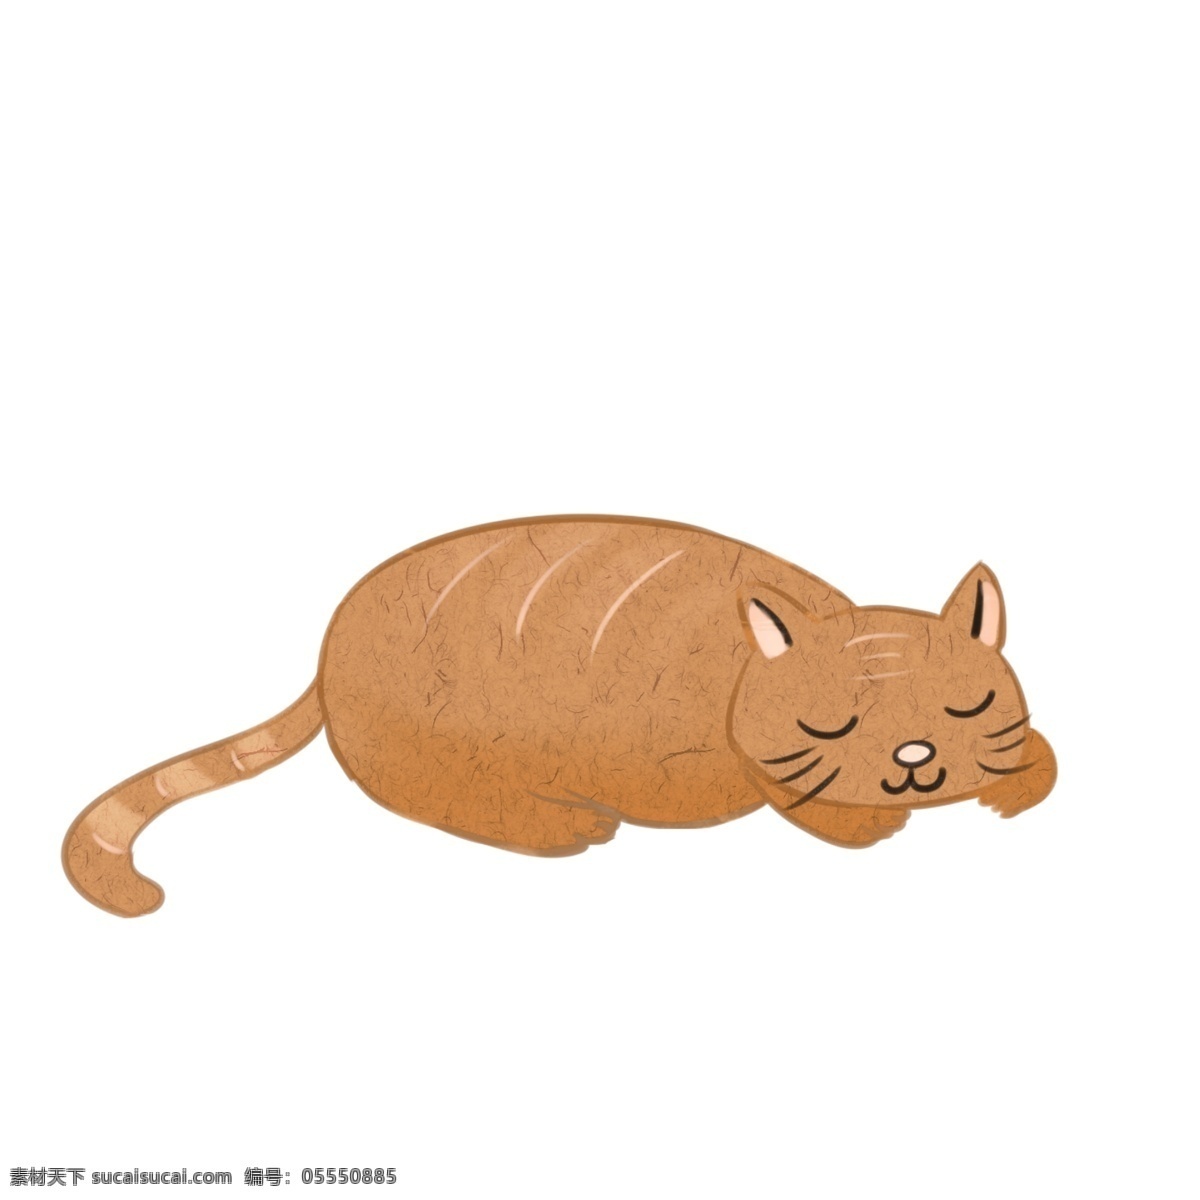 棕色 趴 睡 懒觉 的卡 通 小猫 商用 元素 卡通 可爱 动物 萌宠 睡懒觉